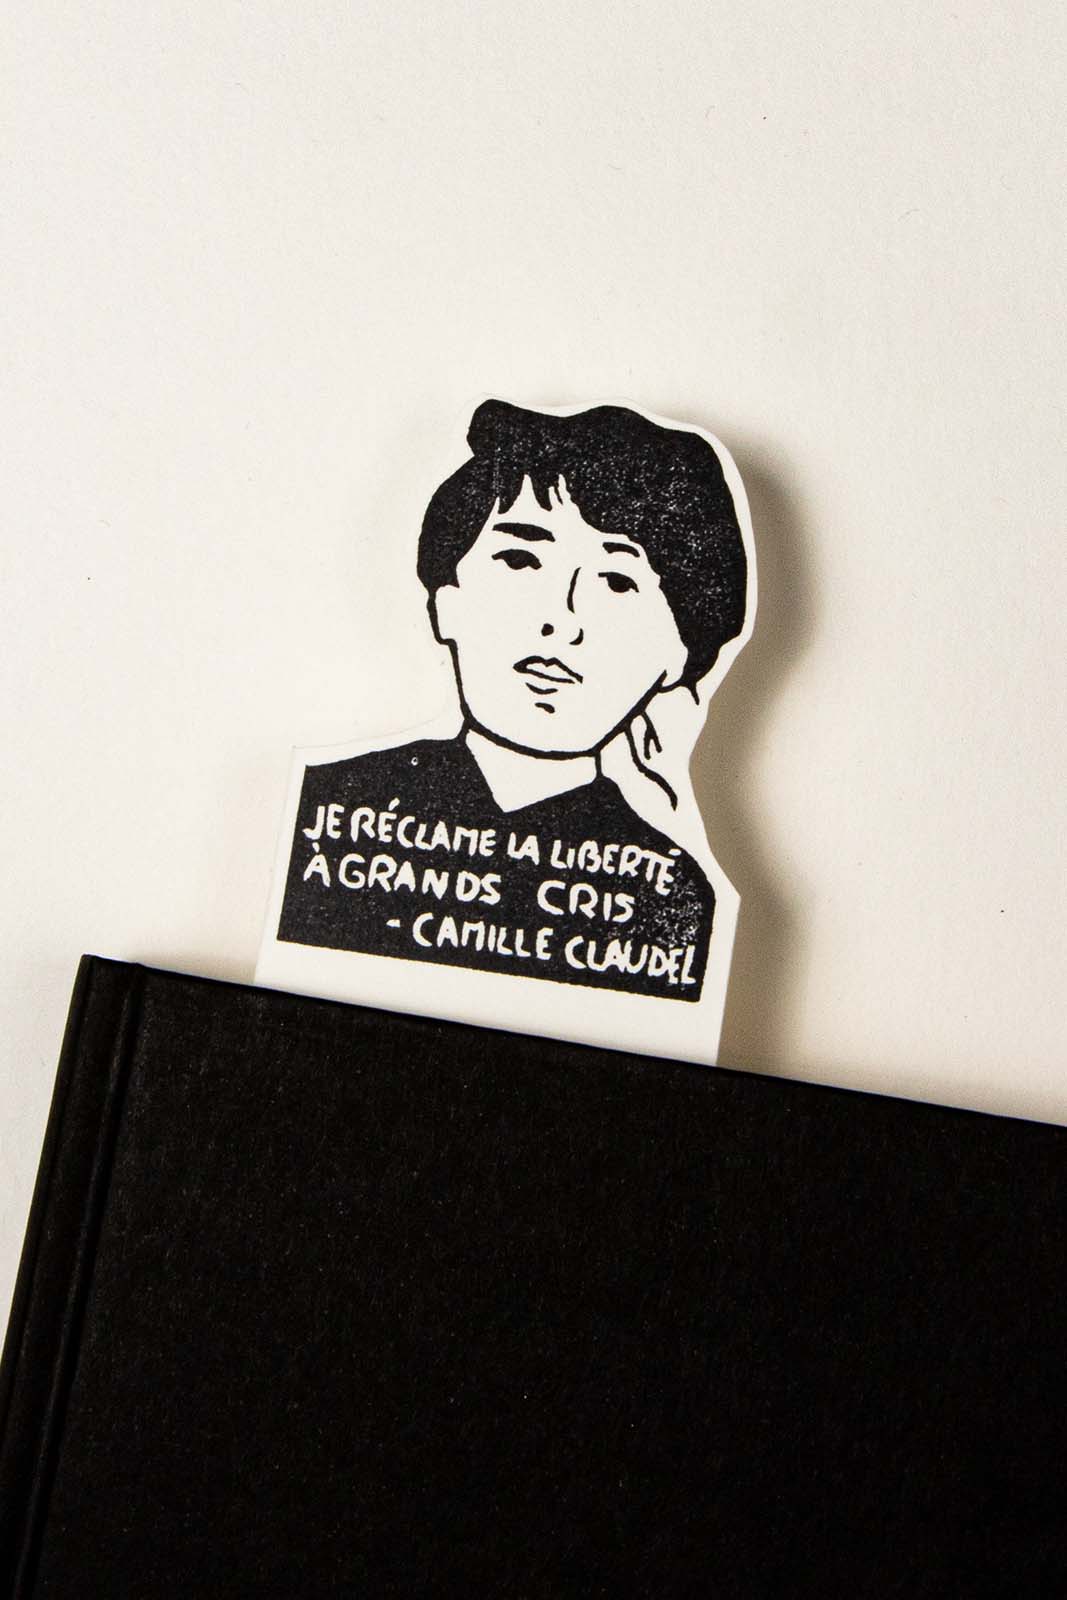 Les Tampons de Roser Marcapáginas de Camille Claudel con el texto "je réclame la liberté à grands cris" colocado en un cuaderno negro sobre una superficie blanca.